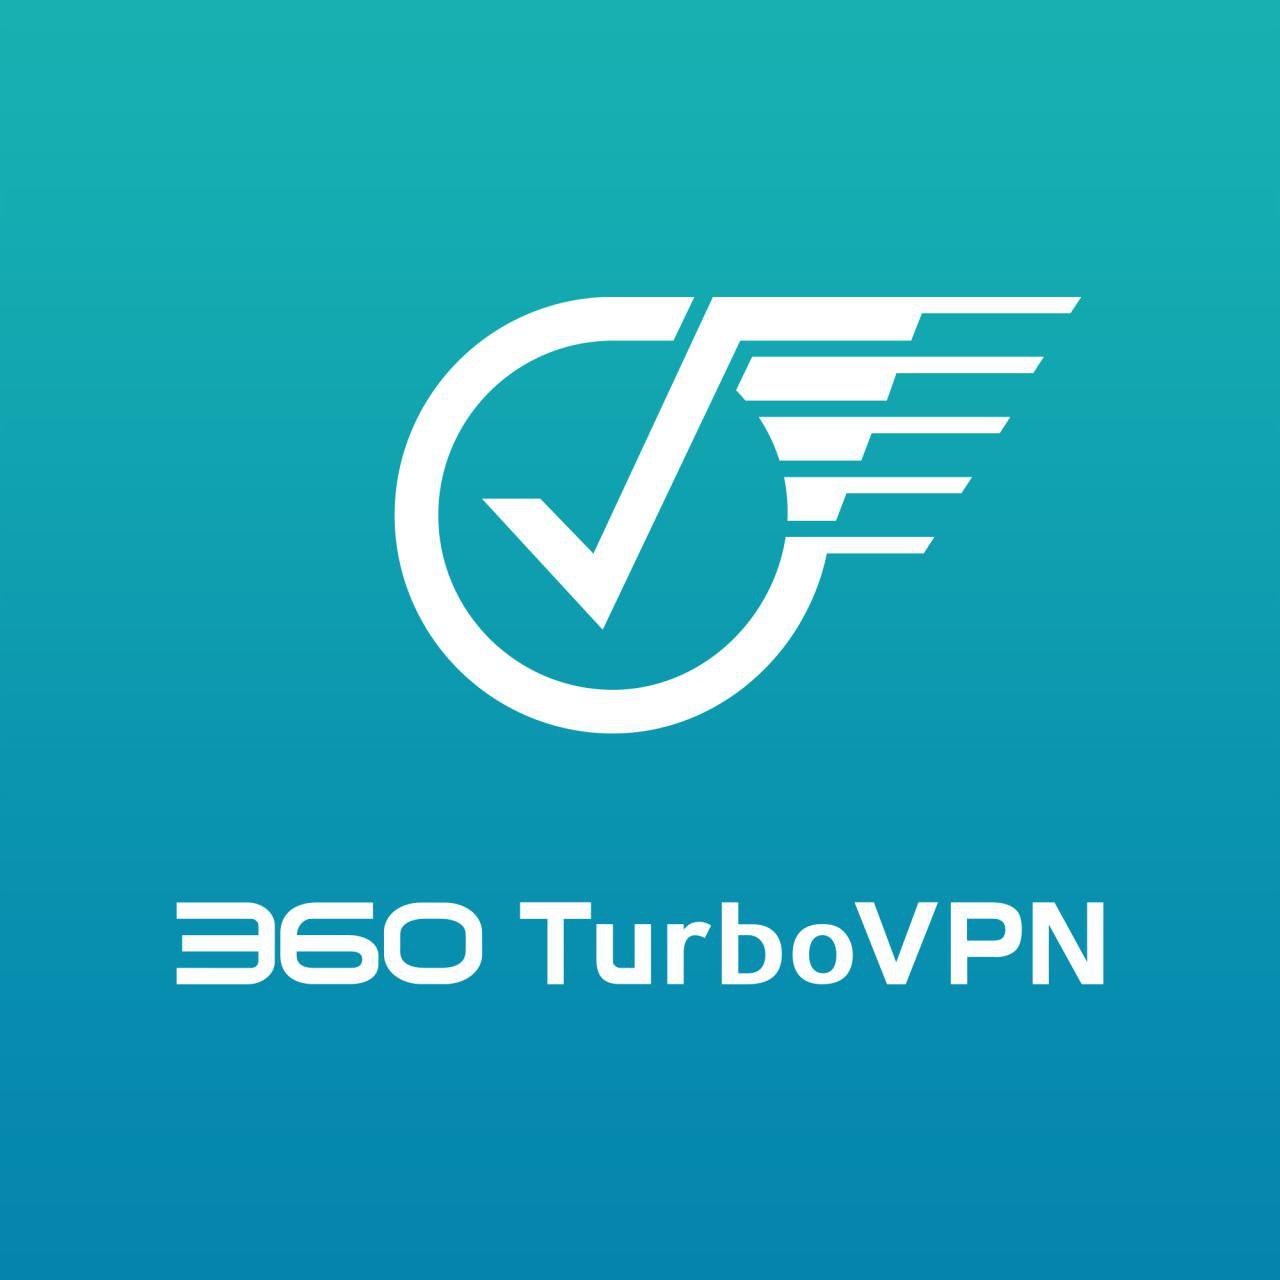 360-turbovpn_6_323052.jpg